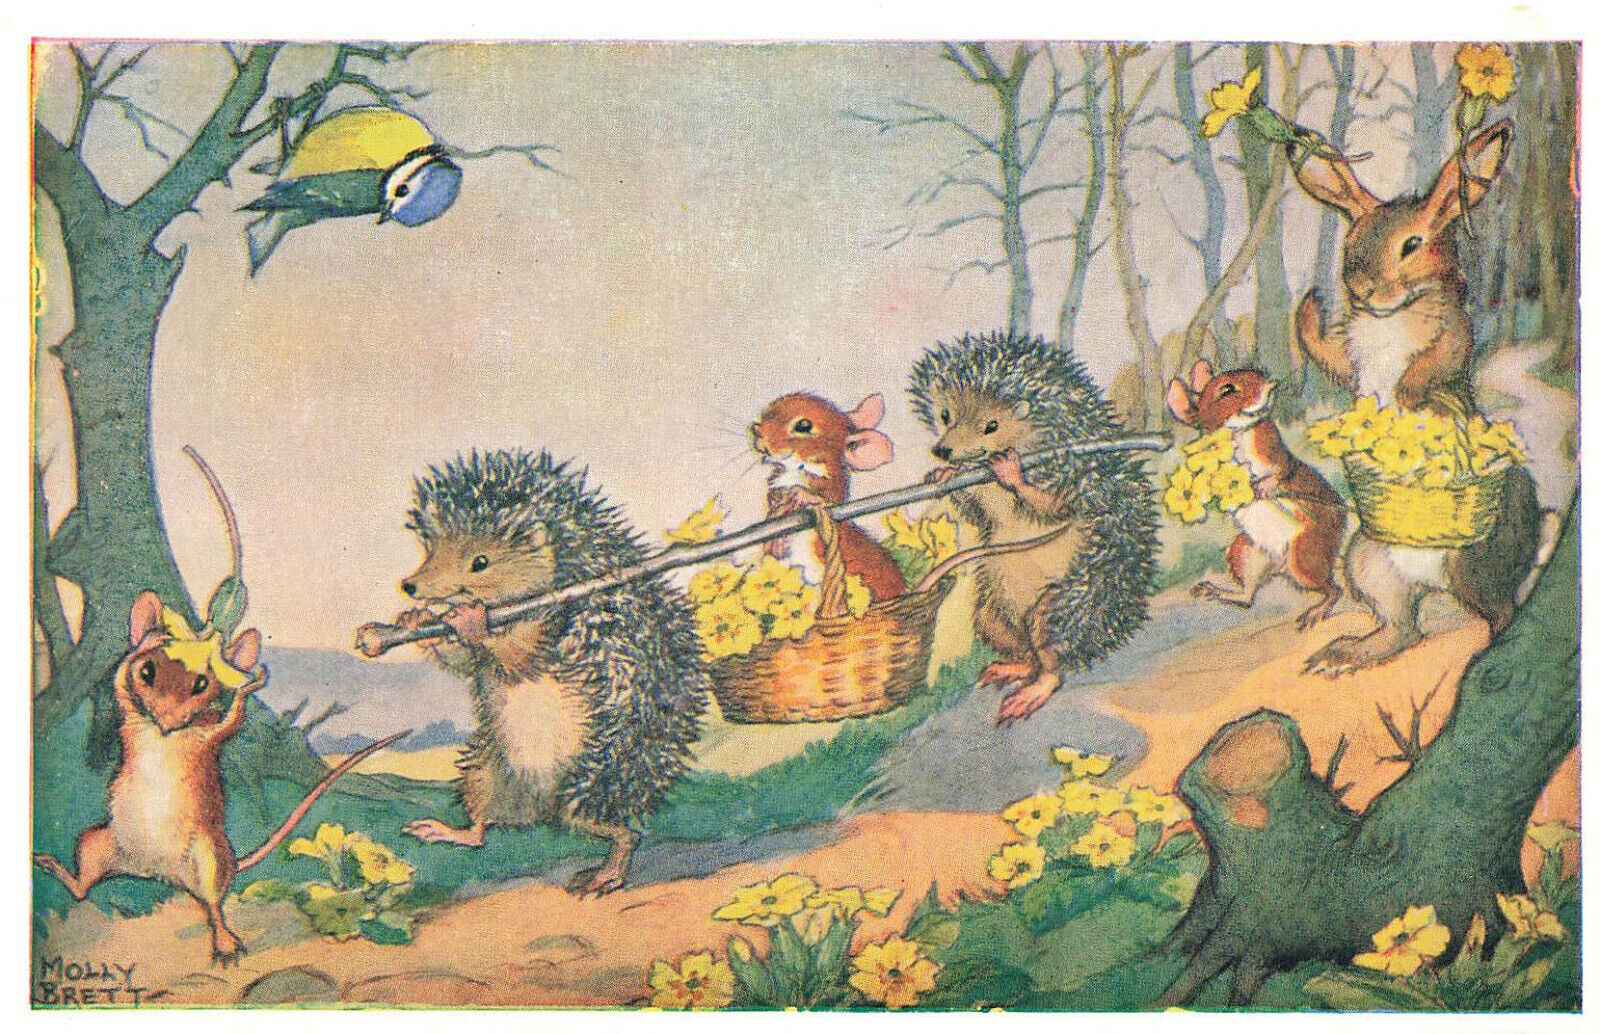 Charming Medici Artist-Signed Molly Brett Fantasy Mice Rabbit Hedgehogs Postcard